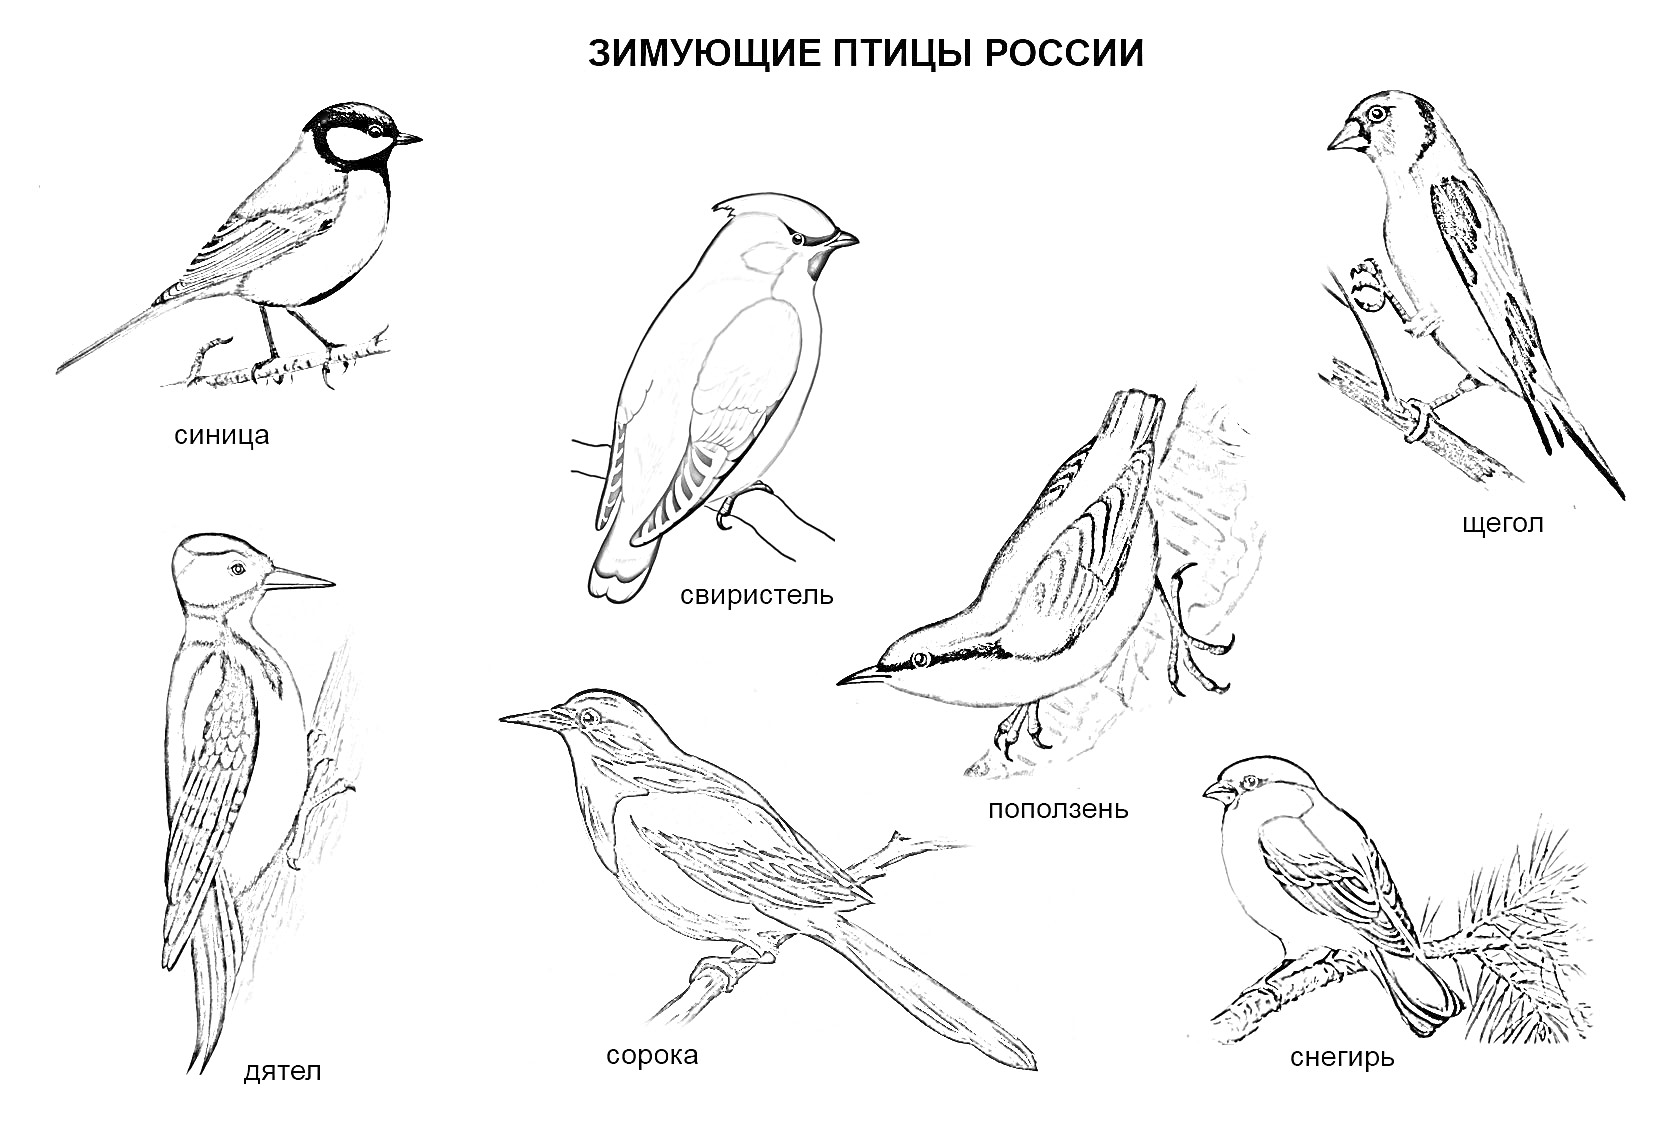 Зимующие птицы России: зяблик, свиристель, синица, дятел, сорока, поползень, снегирь